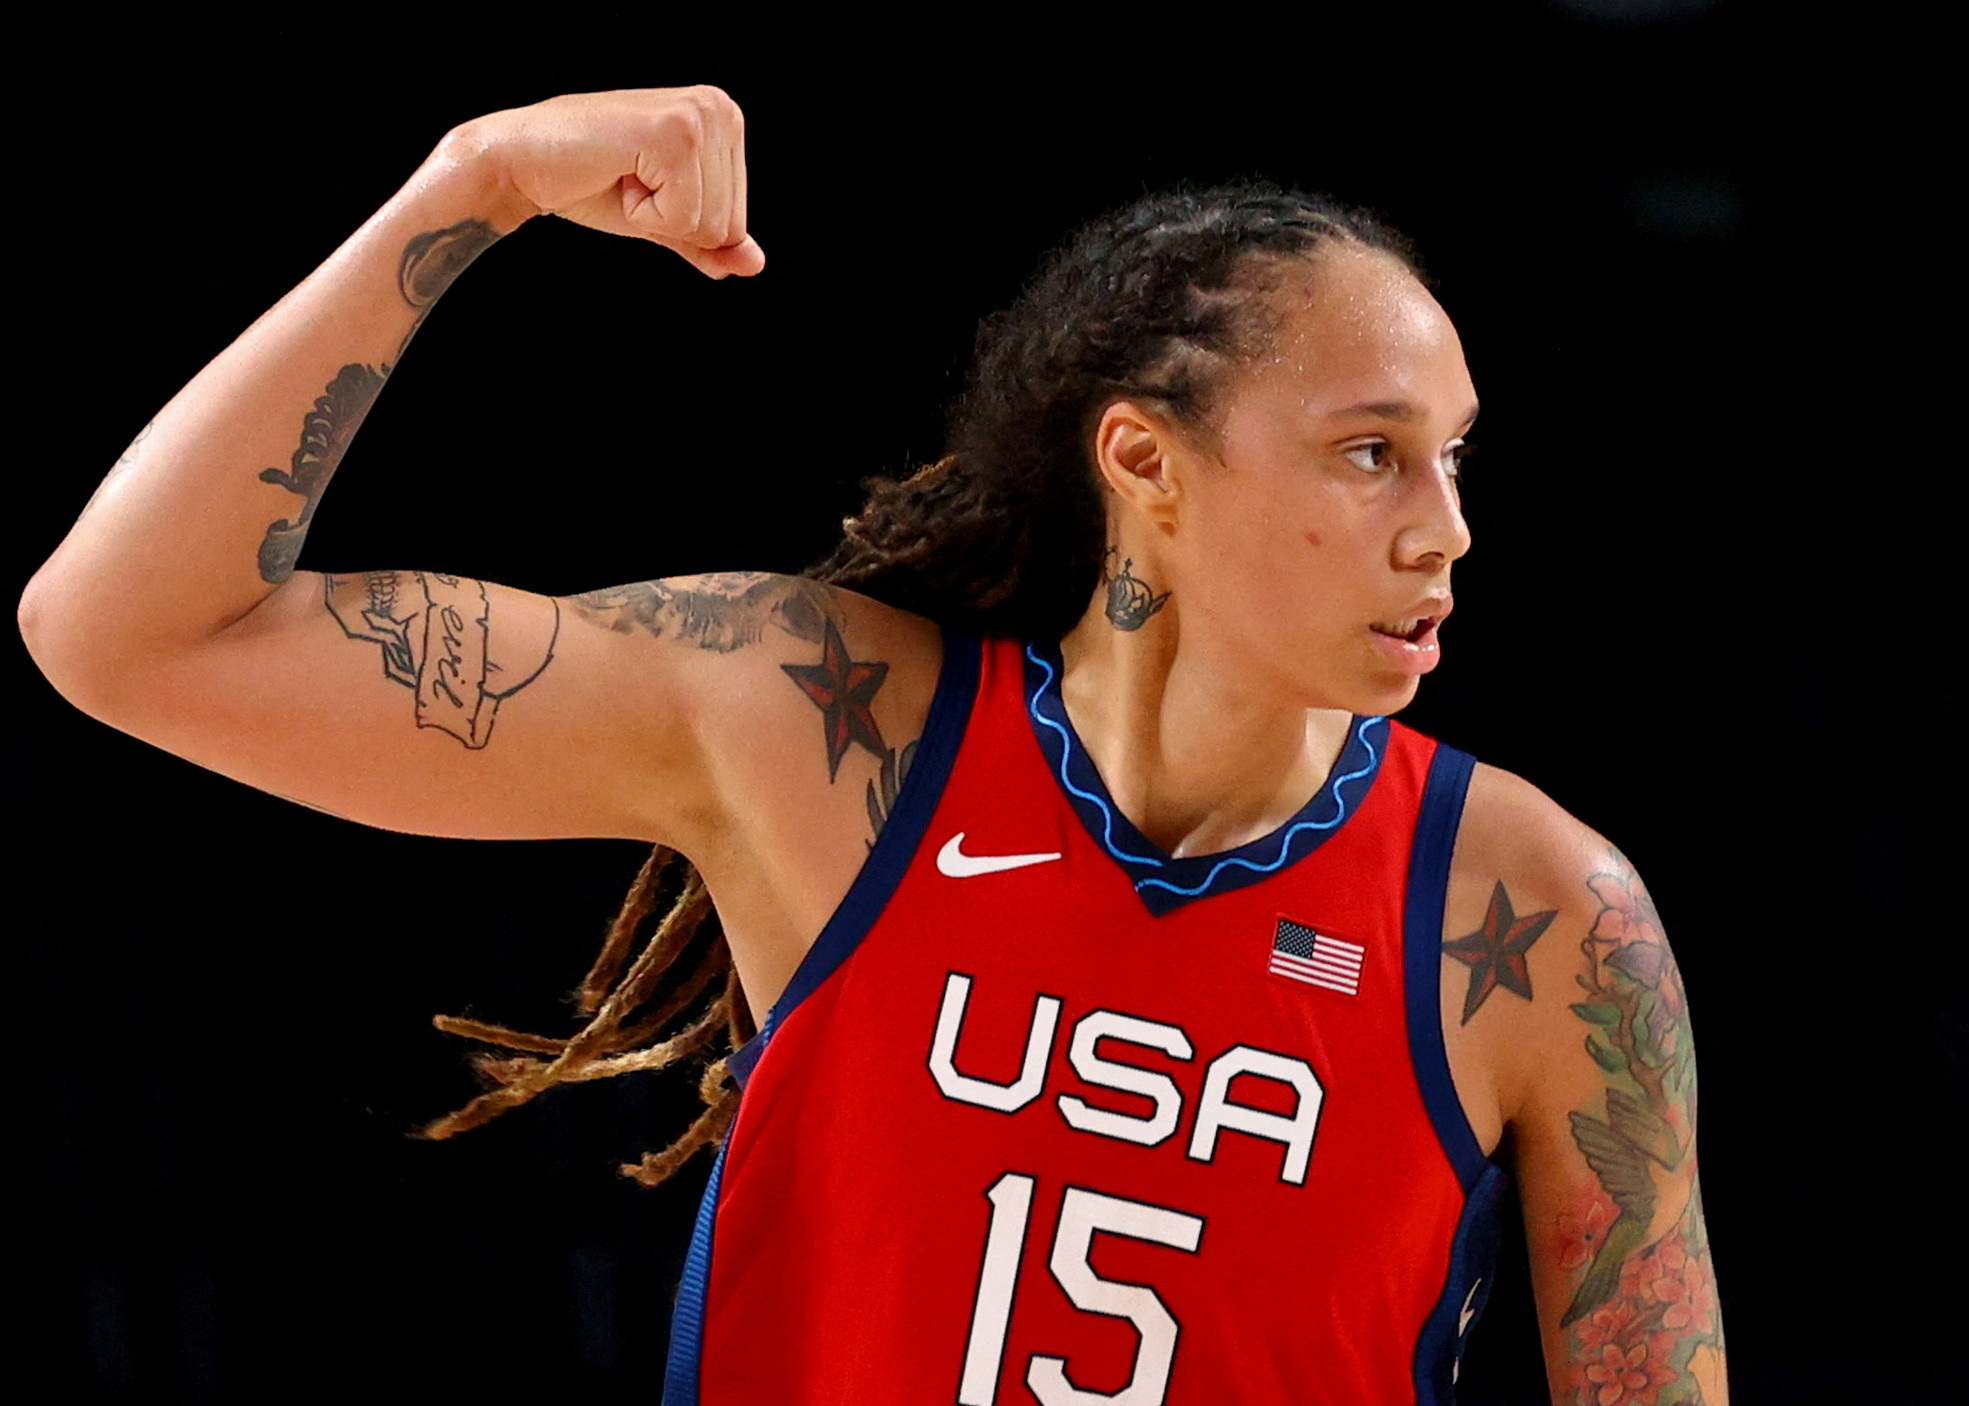 Aunque se desconoce de momento si Griner desea jugar baloncesto nuevamente, tanto la WNBA como USA Basketball –organismo rector de la selección femenina estadounidense— están dispuestos a recibirla con los brazos abiertos. (REUTERS)